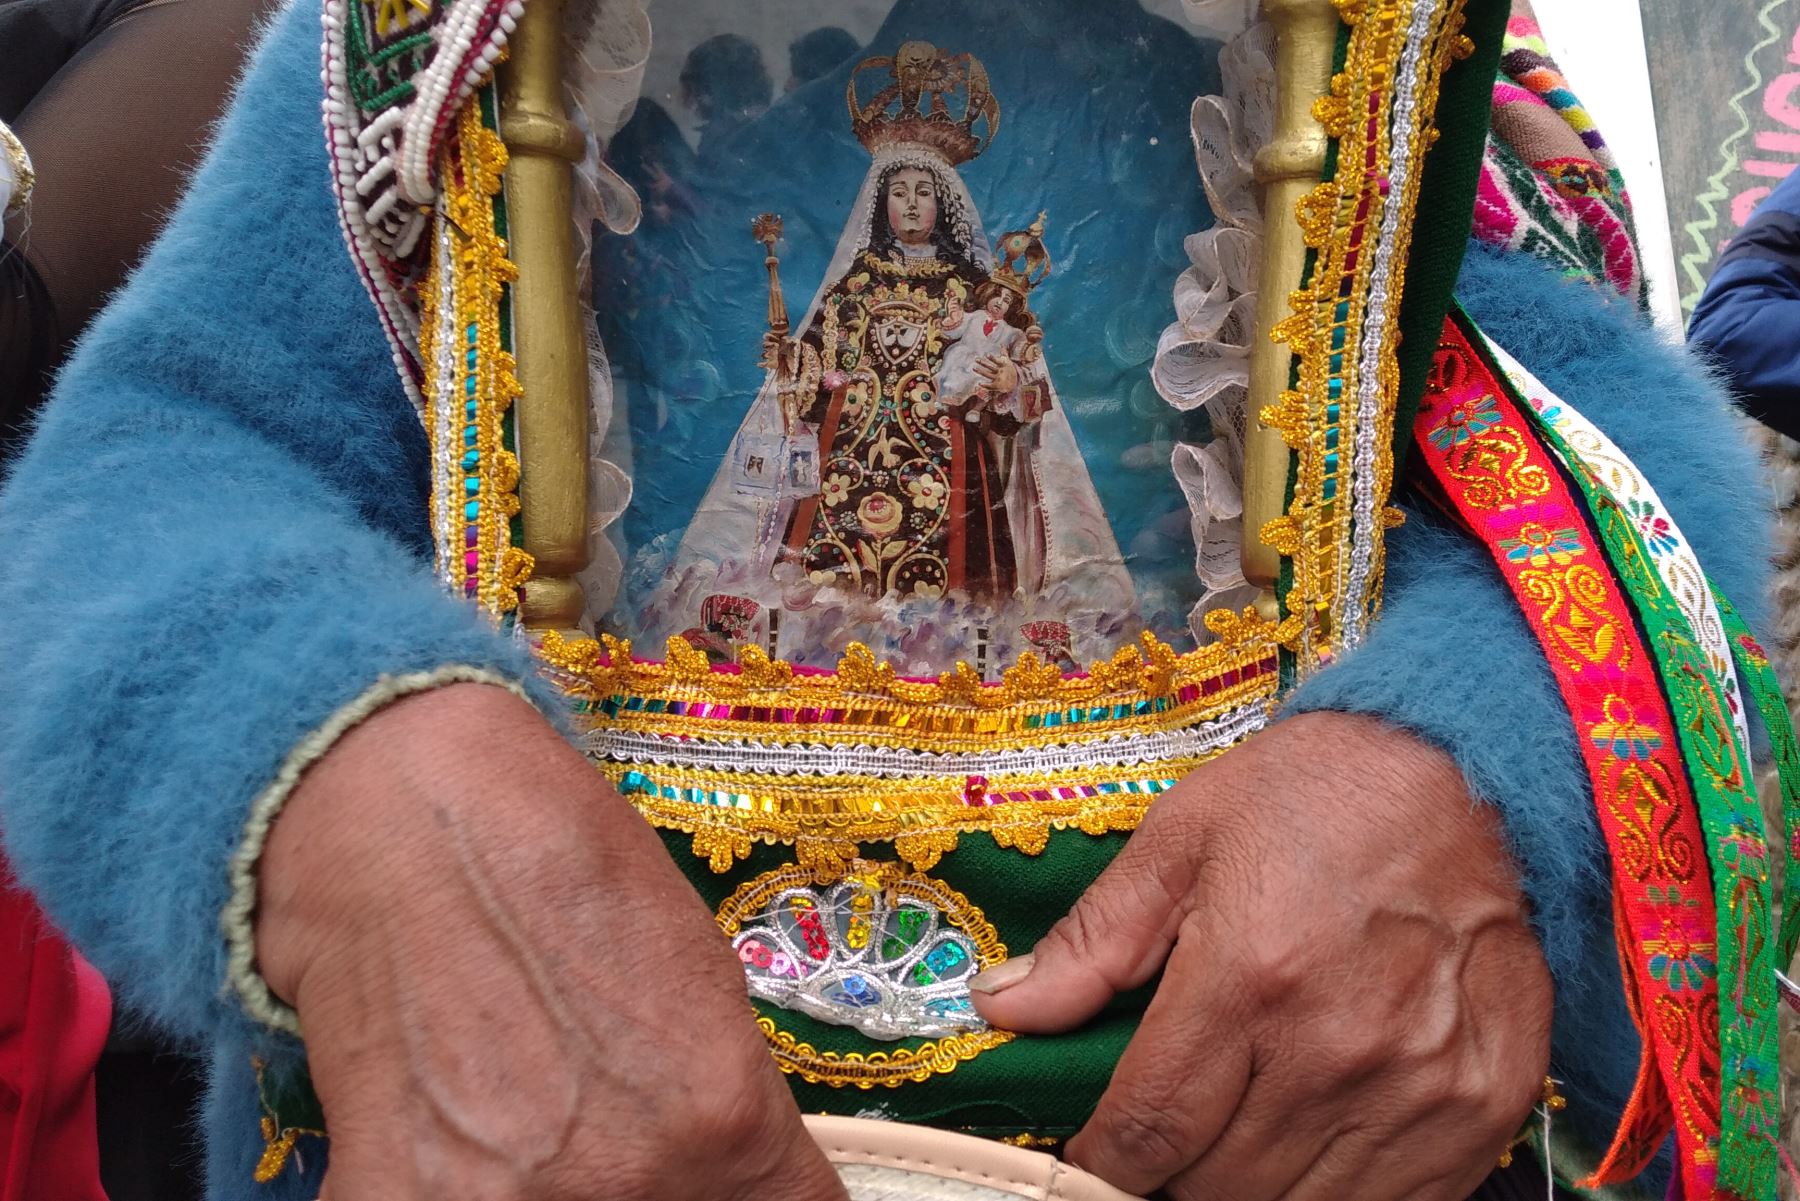 La tradicional festividad de la Virgen del Carmen de Paucartambo, en Cusco, se celebrará este año de manera virtual. ANDINA/Percy Hurtado Santillán